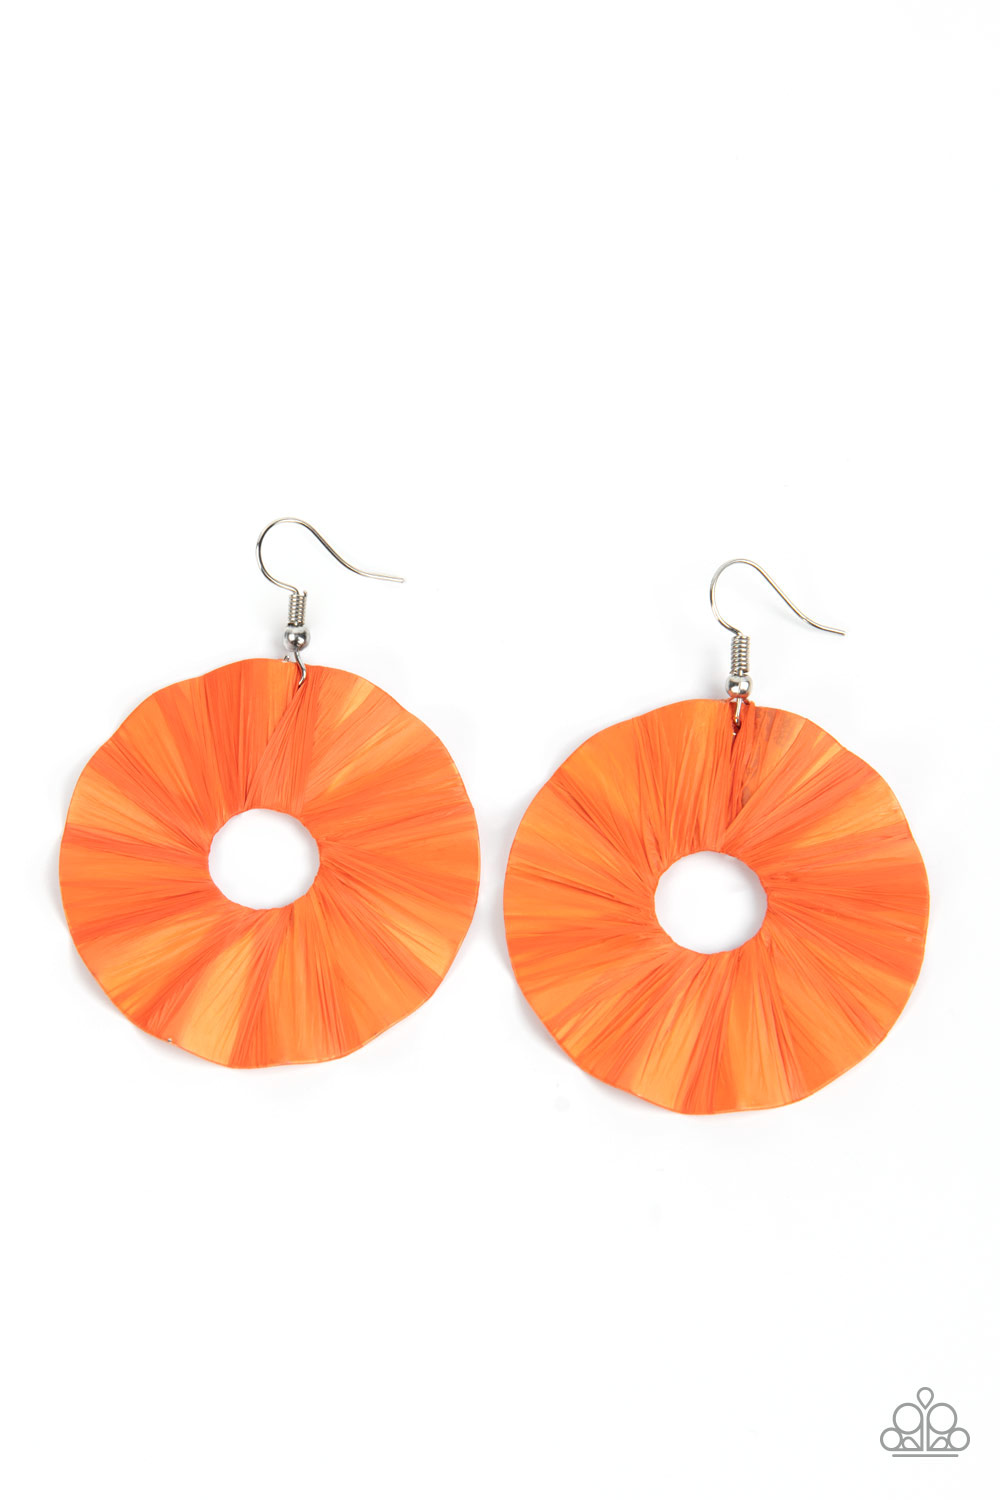 Earring - Fan the Breeze - Orange